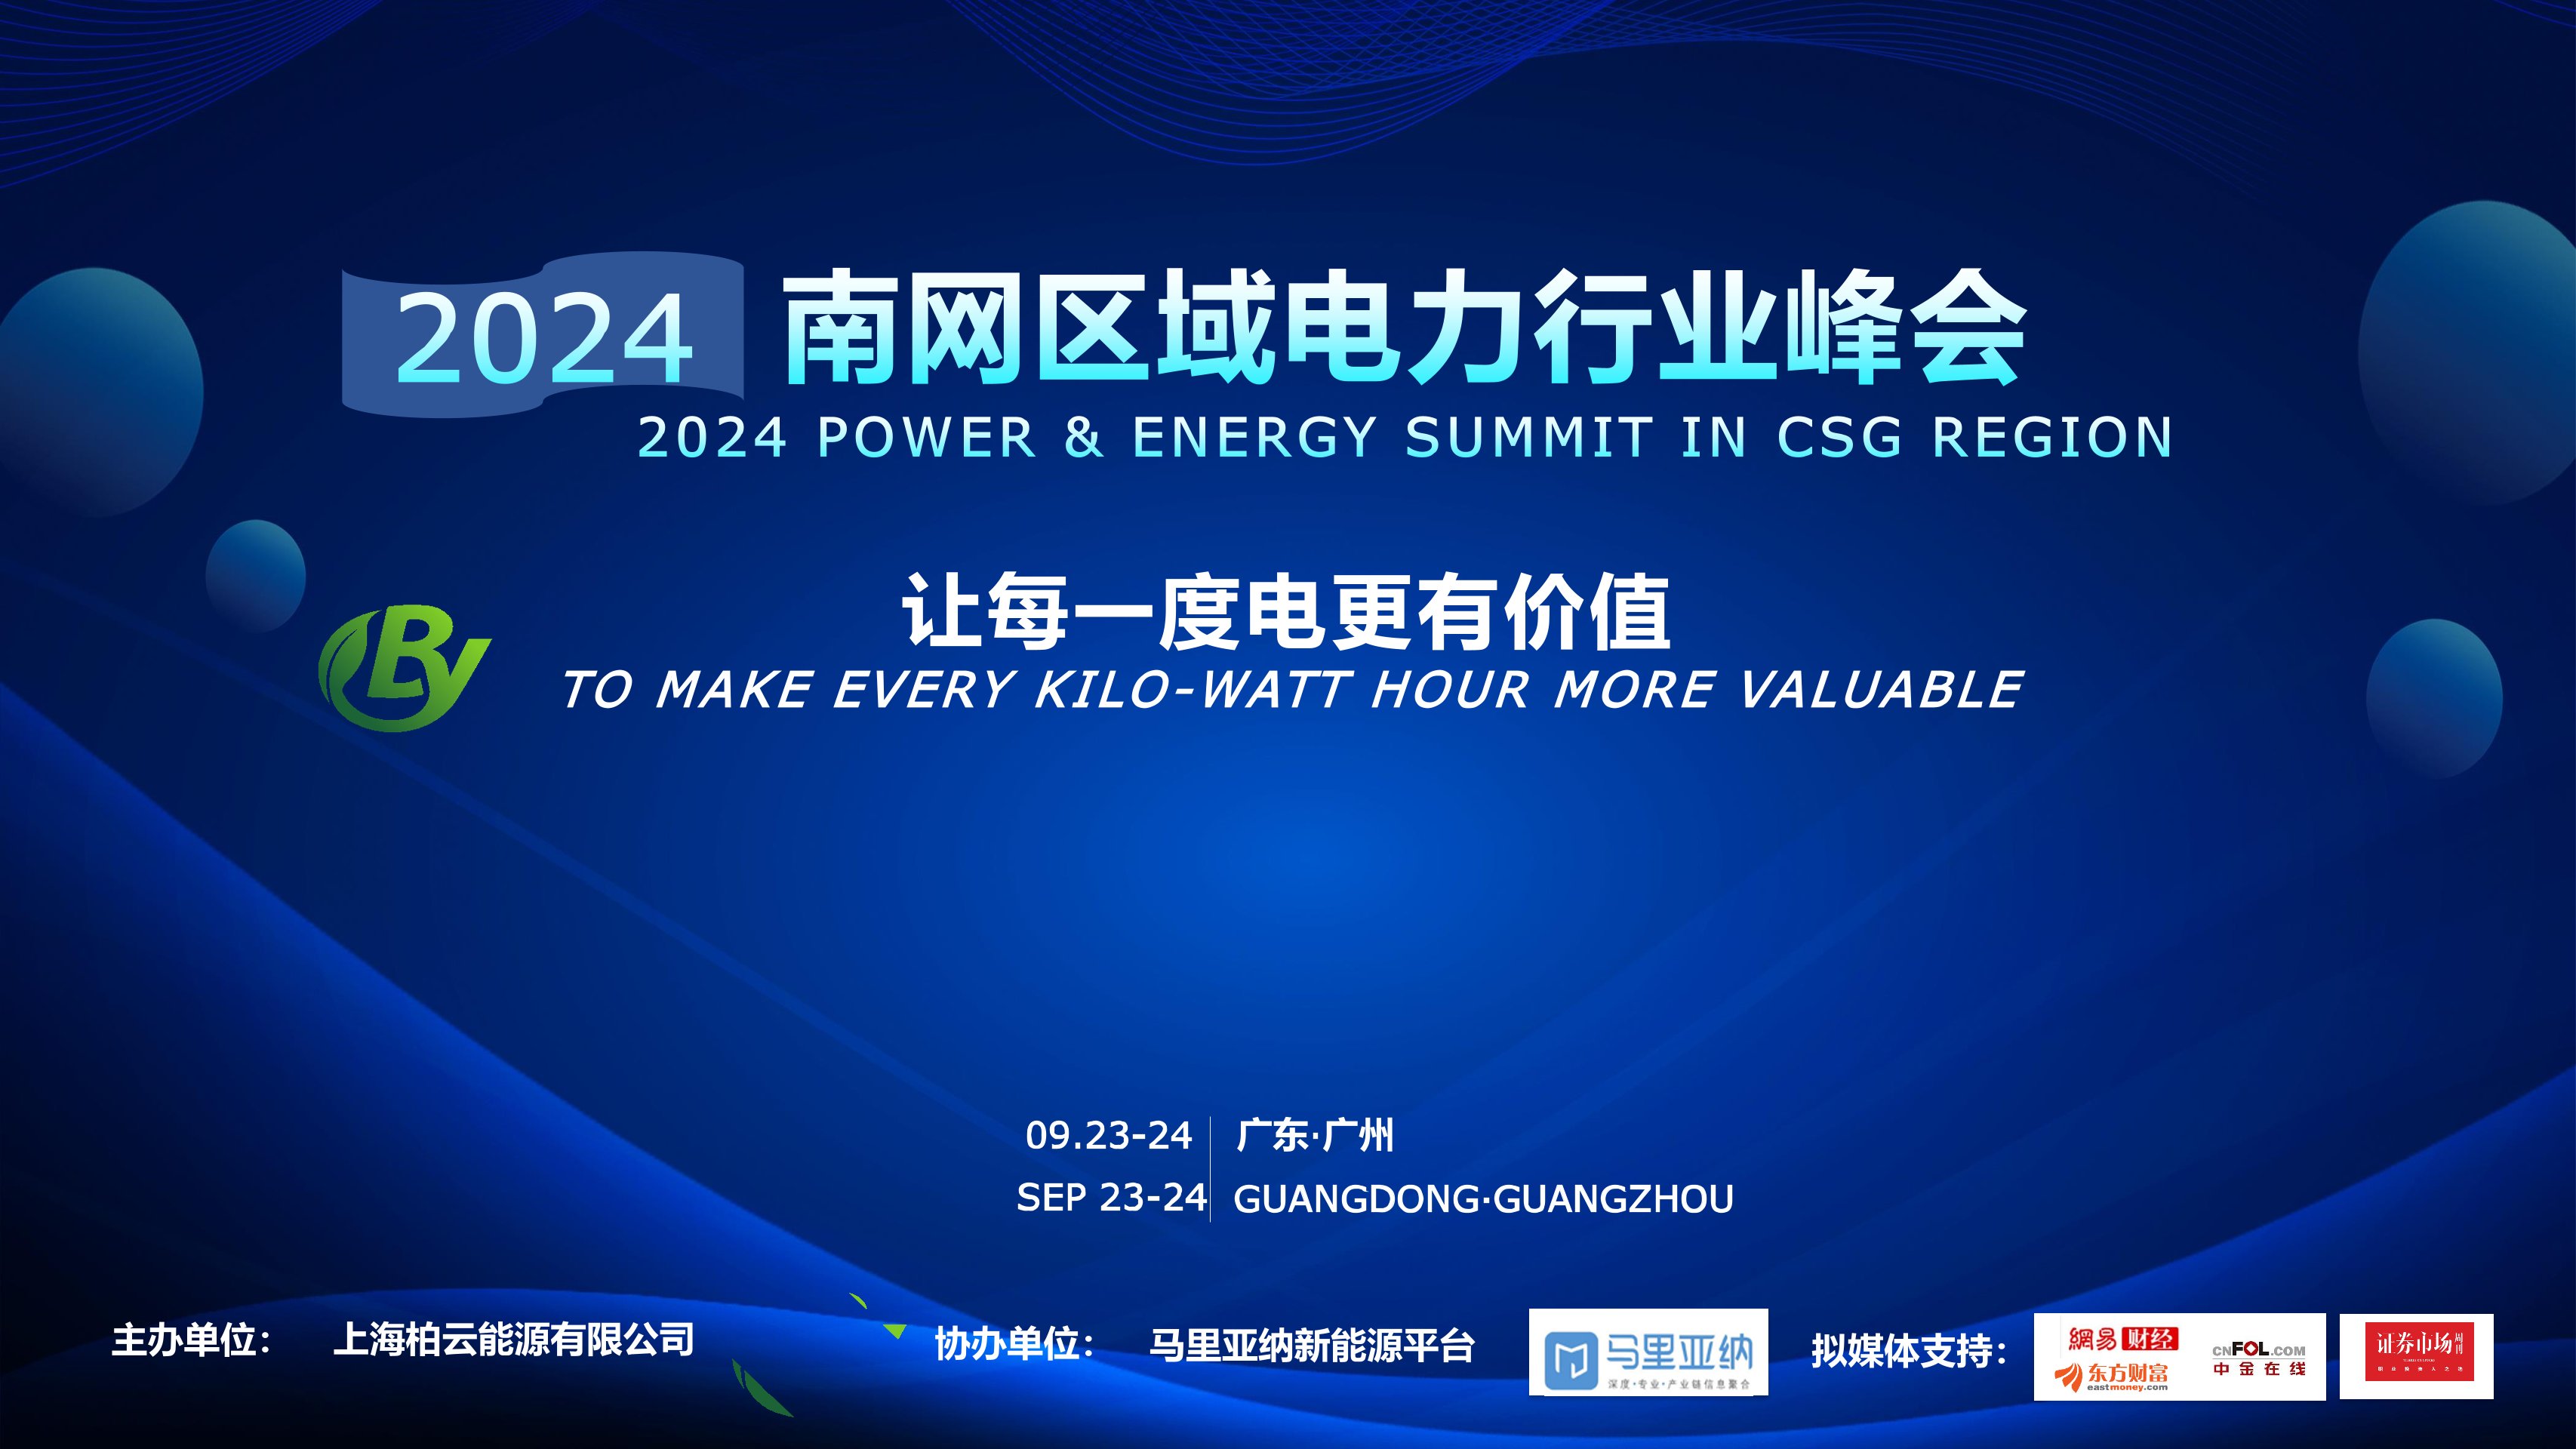 2024年南网区域电力行业峰会